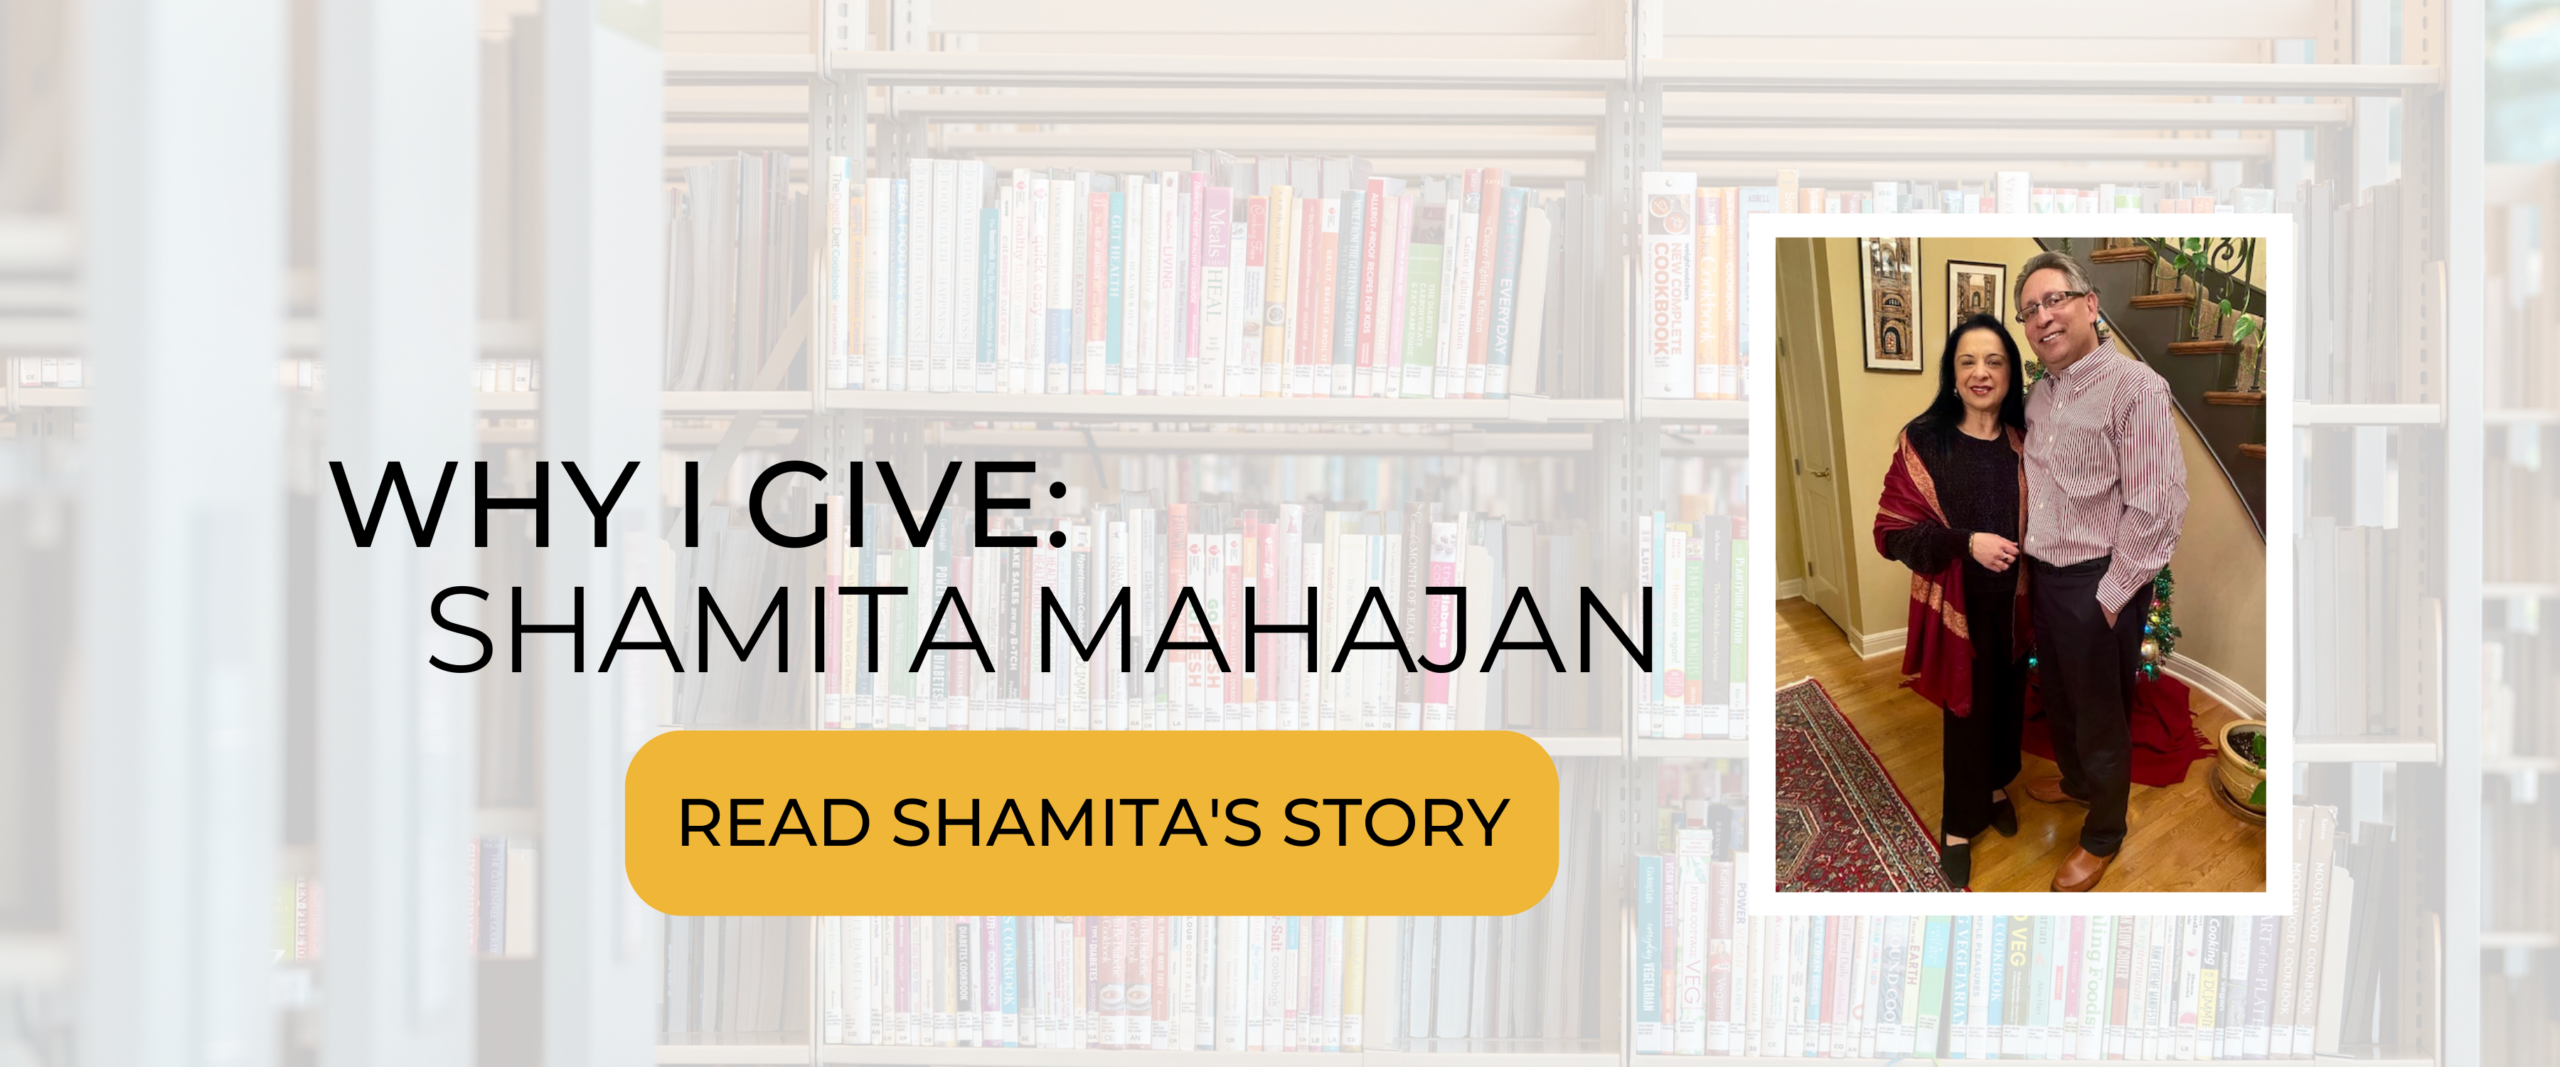 Why I Give: Shamita Mahajan. Click to read her story!